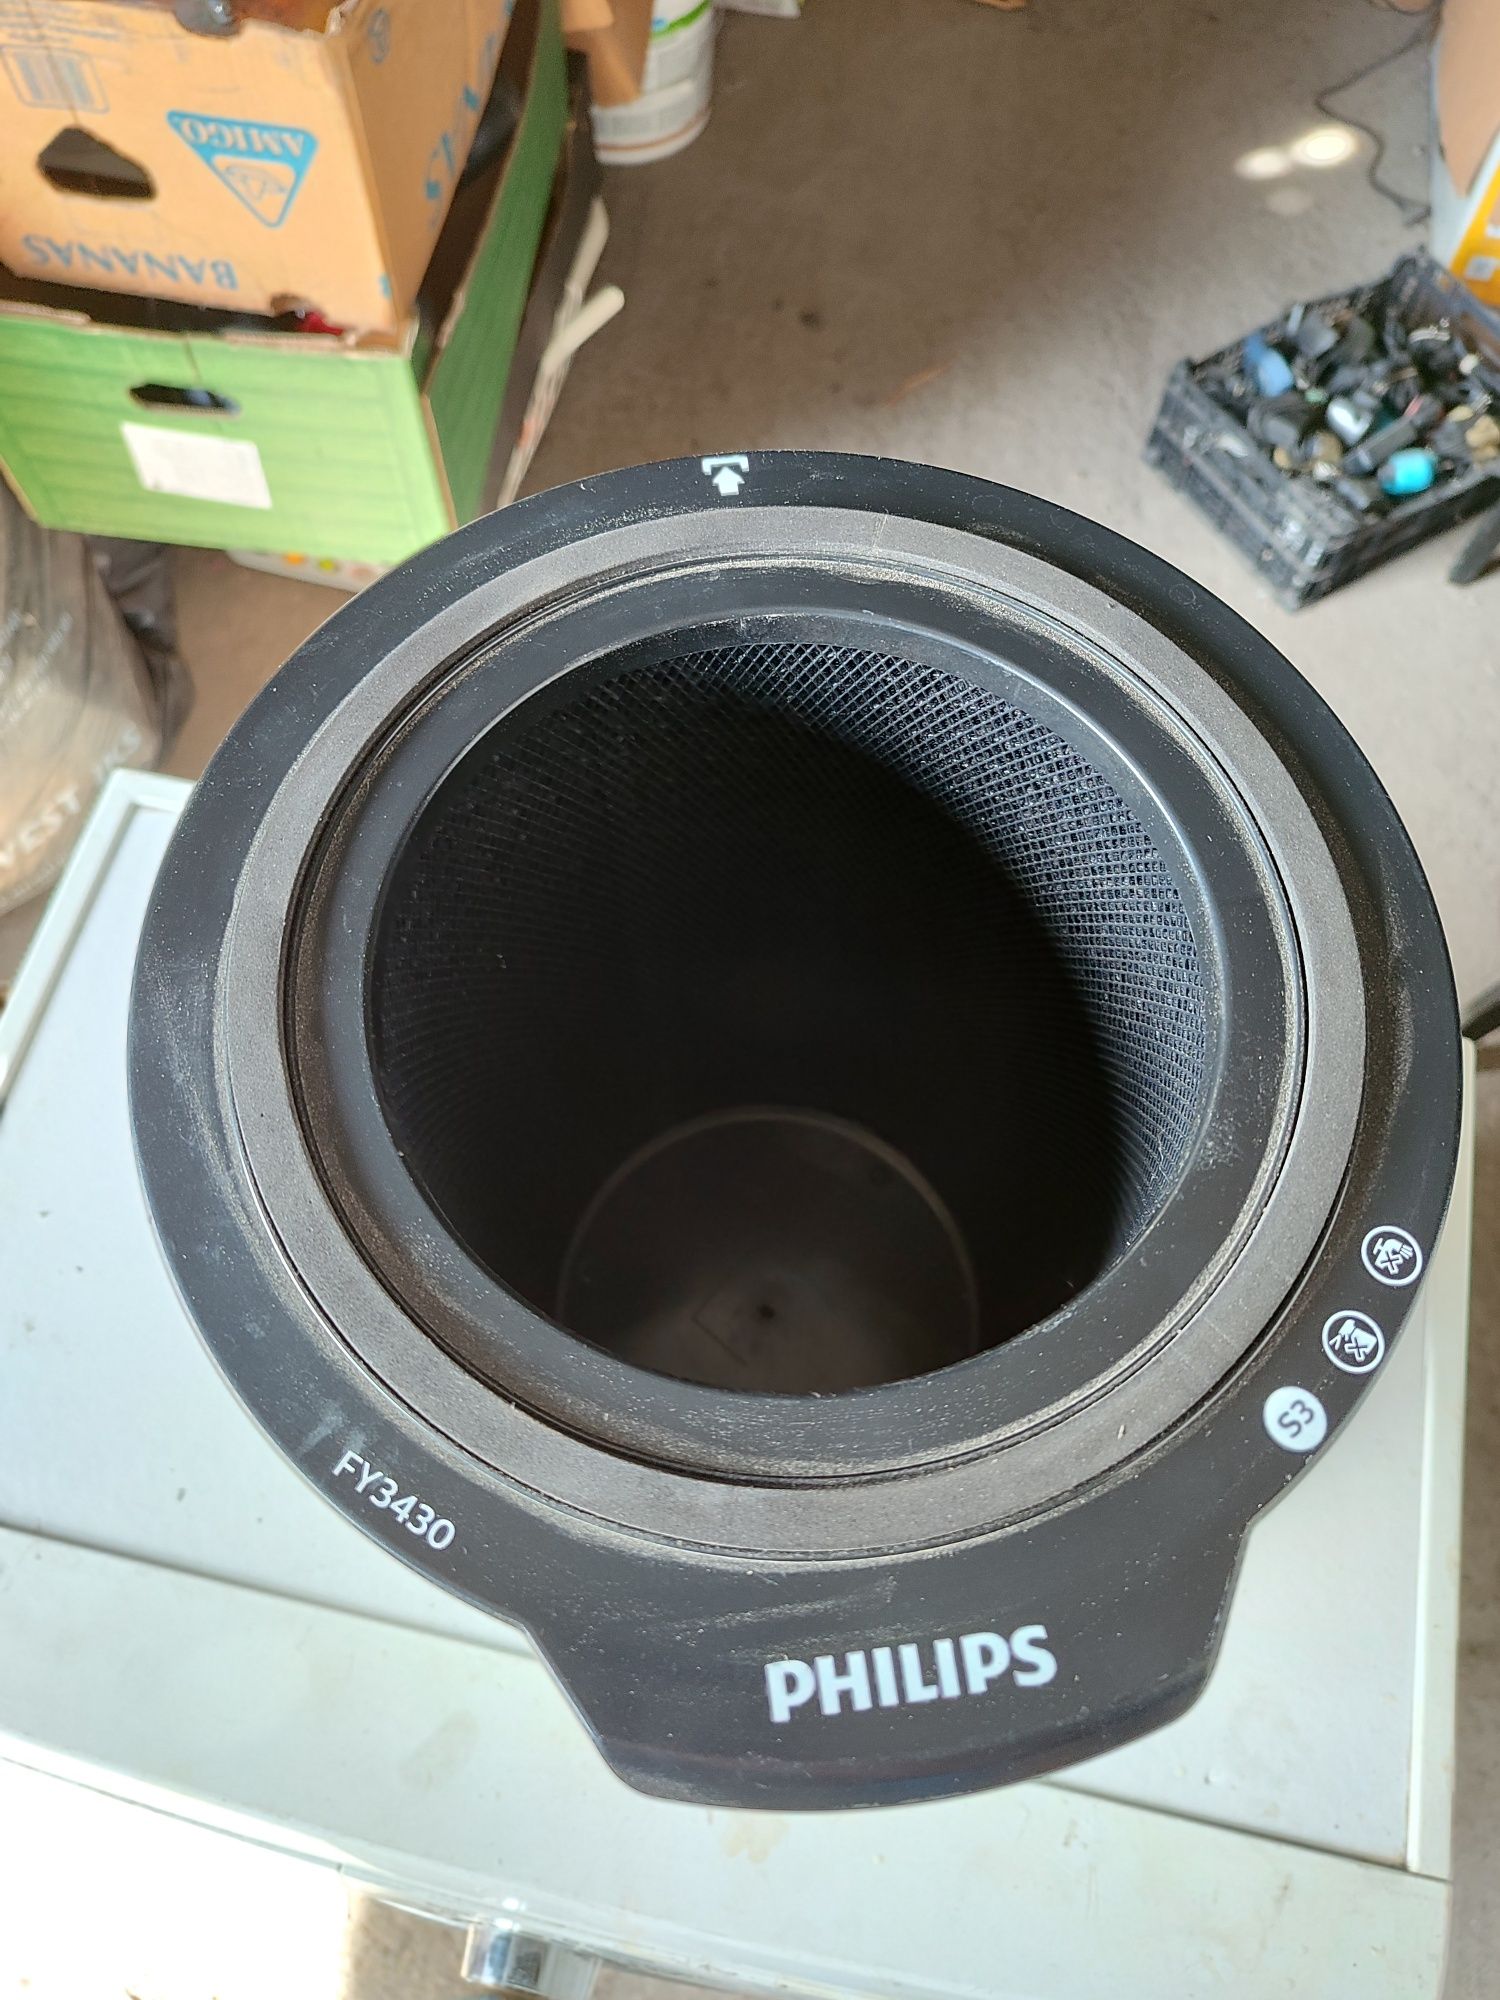 Nowy Filtr Philips FY3430 do oczyszczacza powietrza możliwa wysyłka